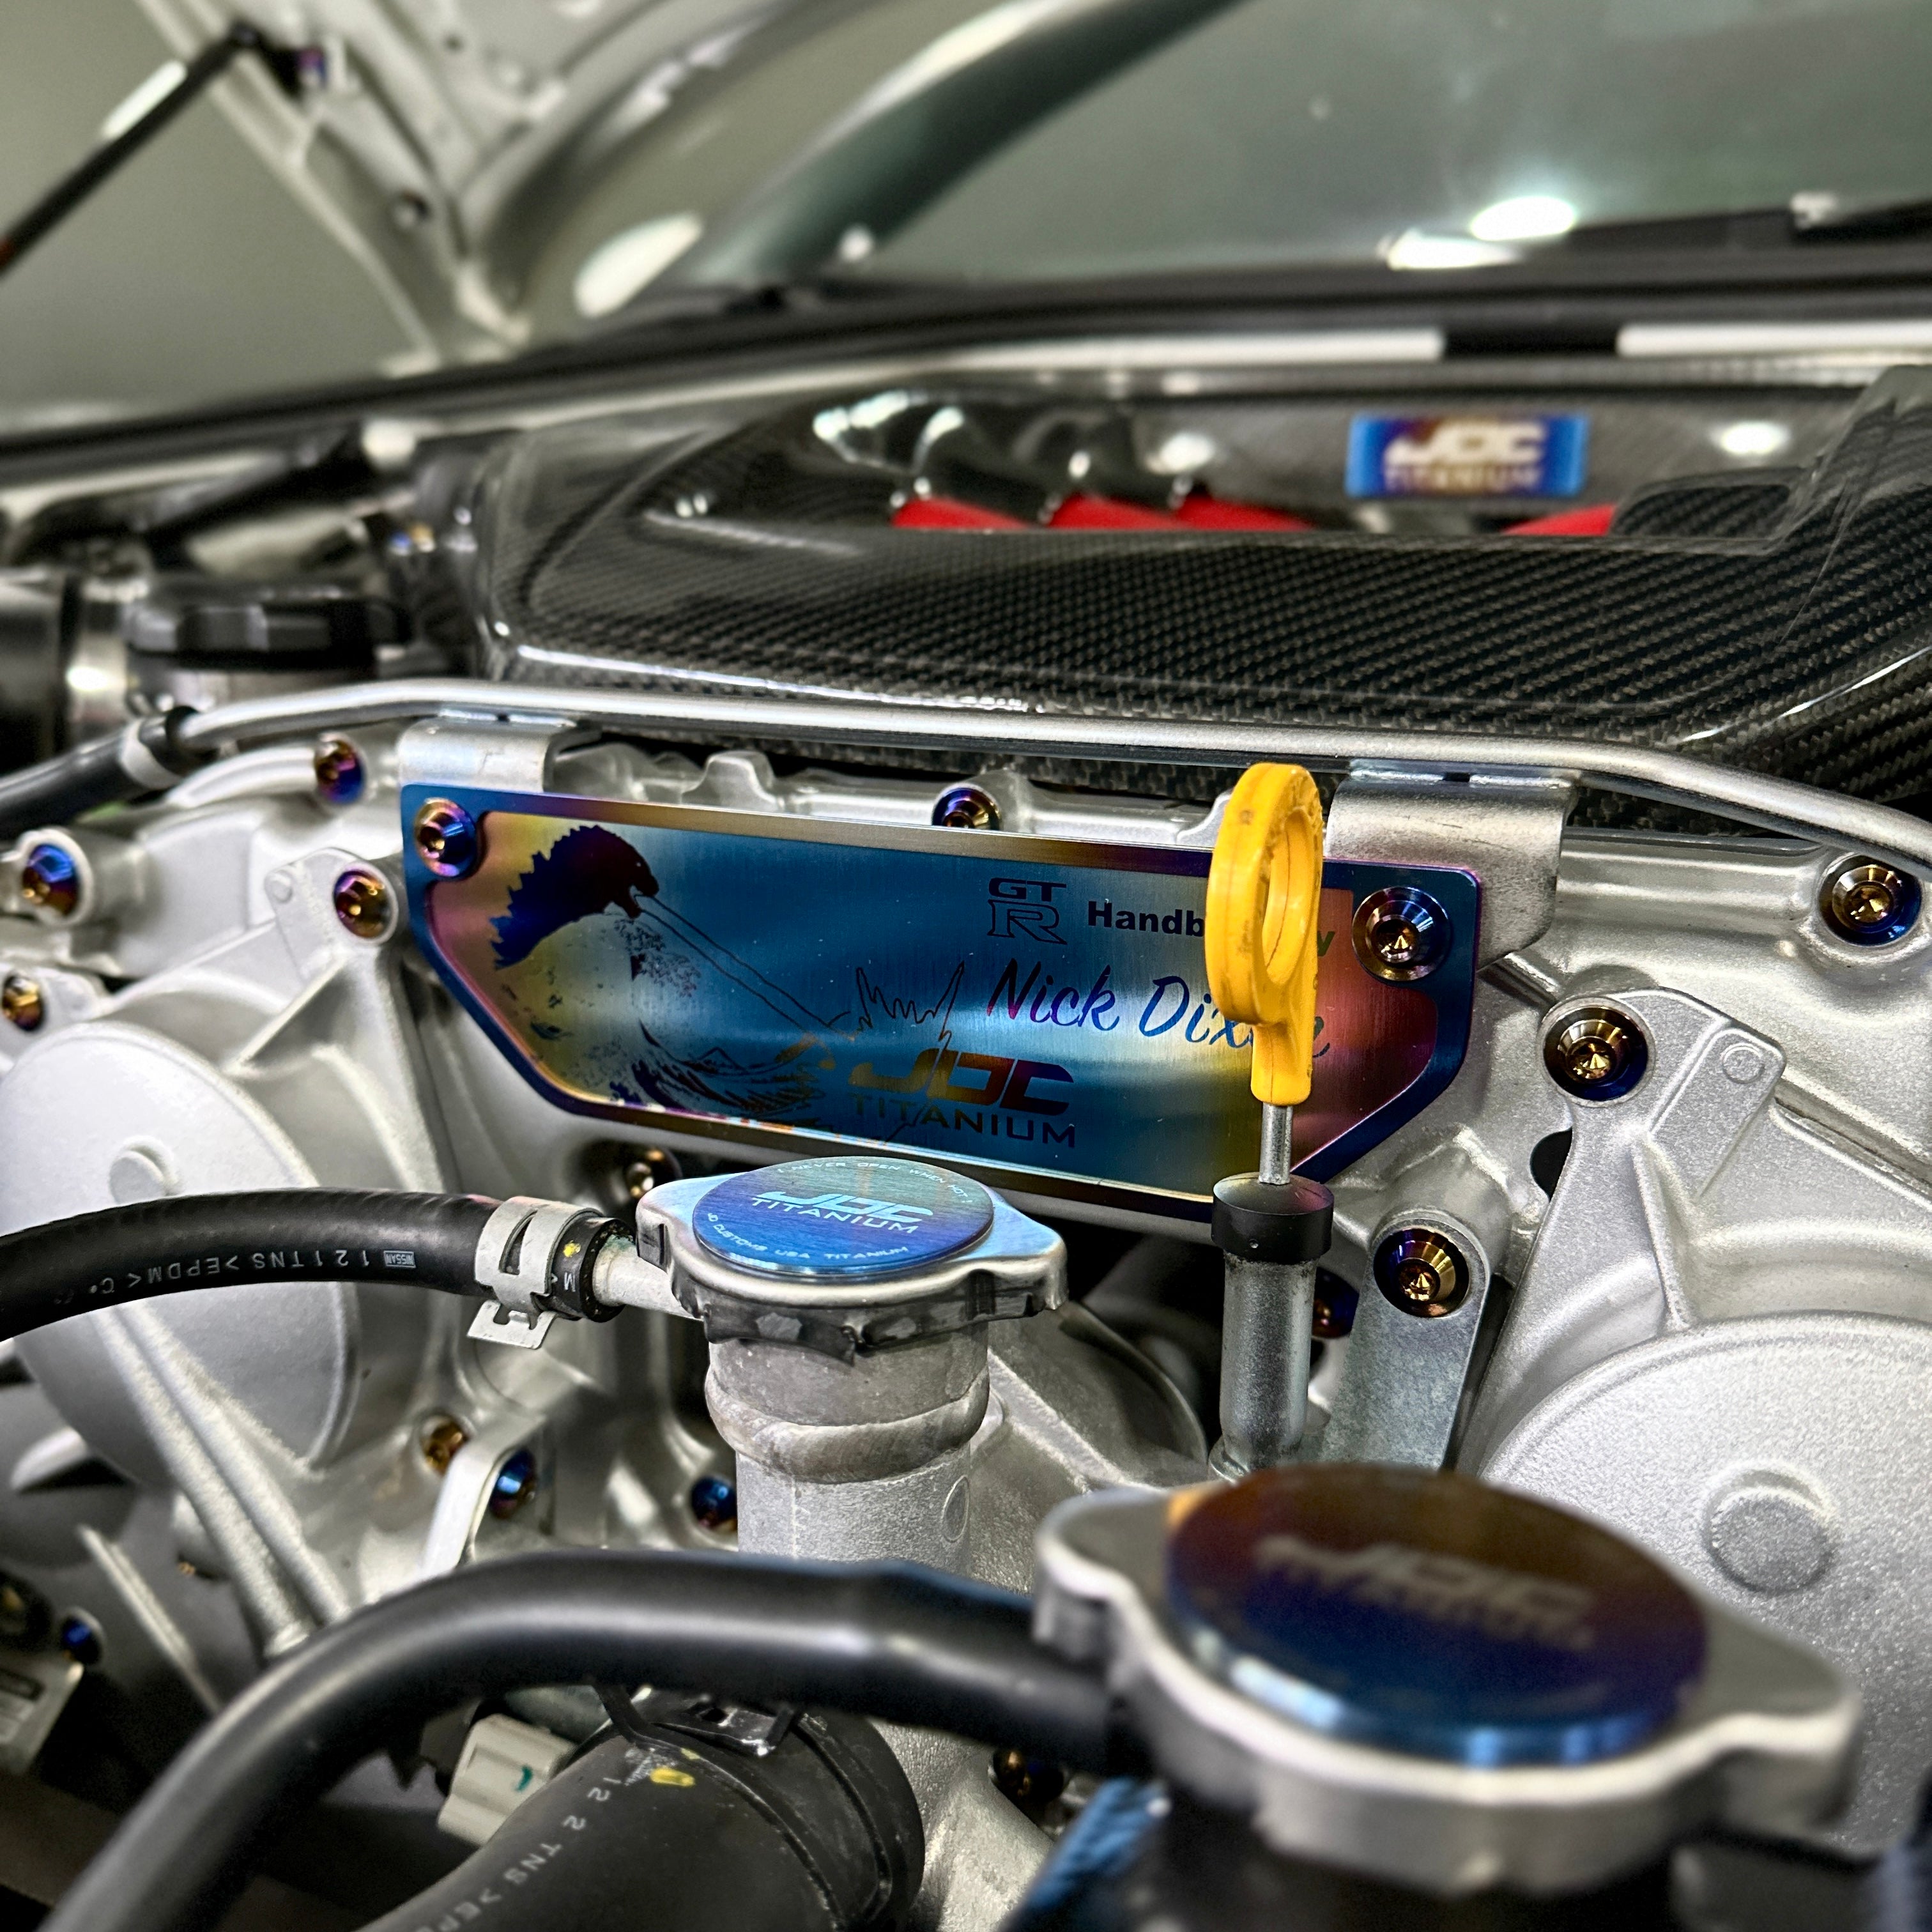 Placa de construcción del motor de titanio JDC (Nissan GT-R)